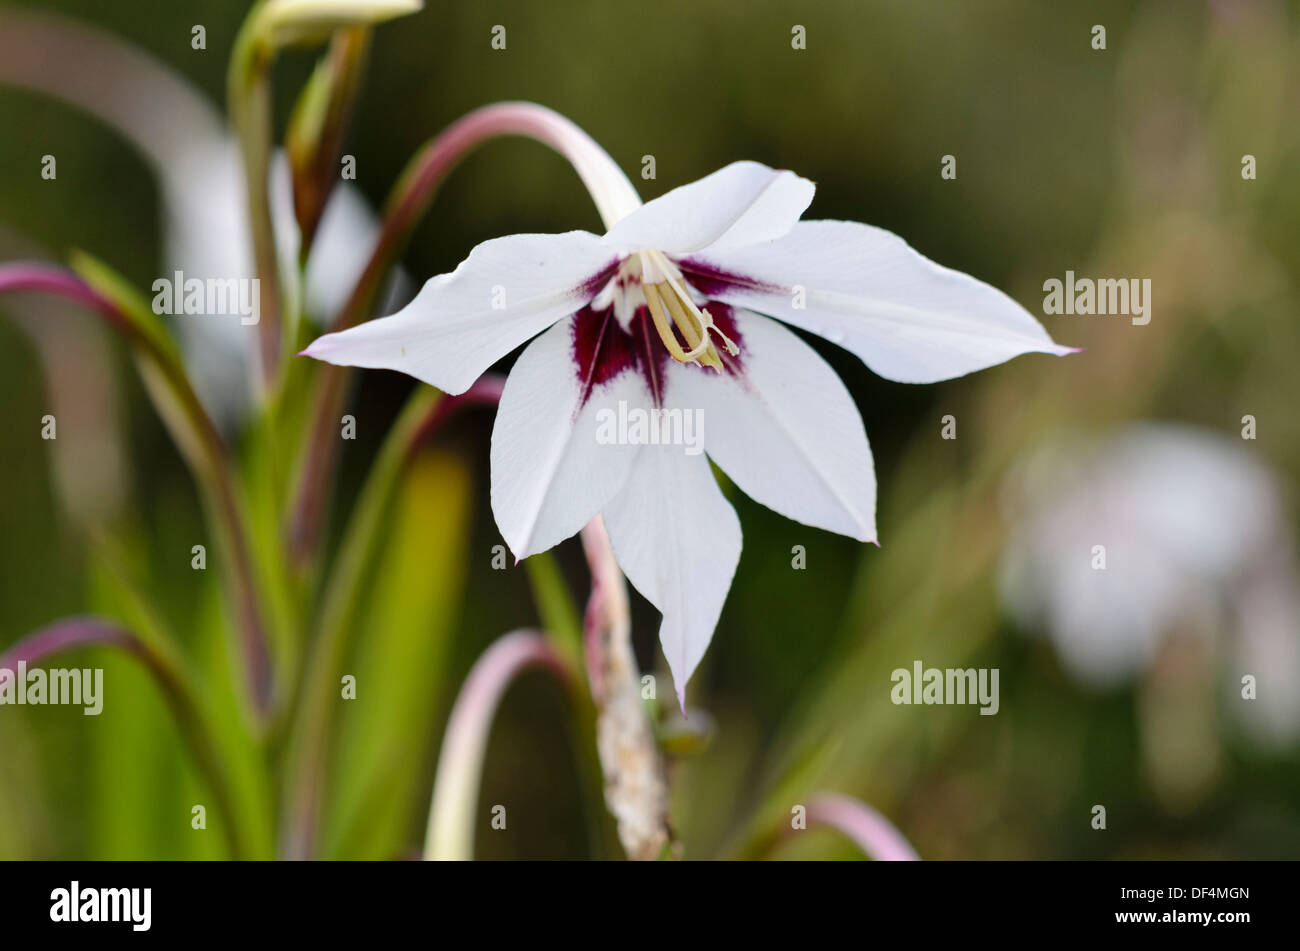 Gladiolus (Gladiolus callianthus var. murielae) Stock Photo